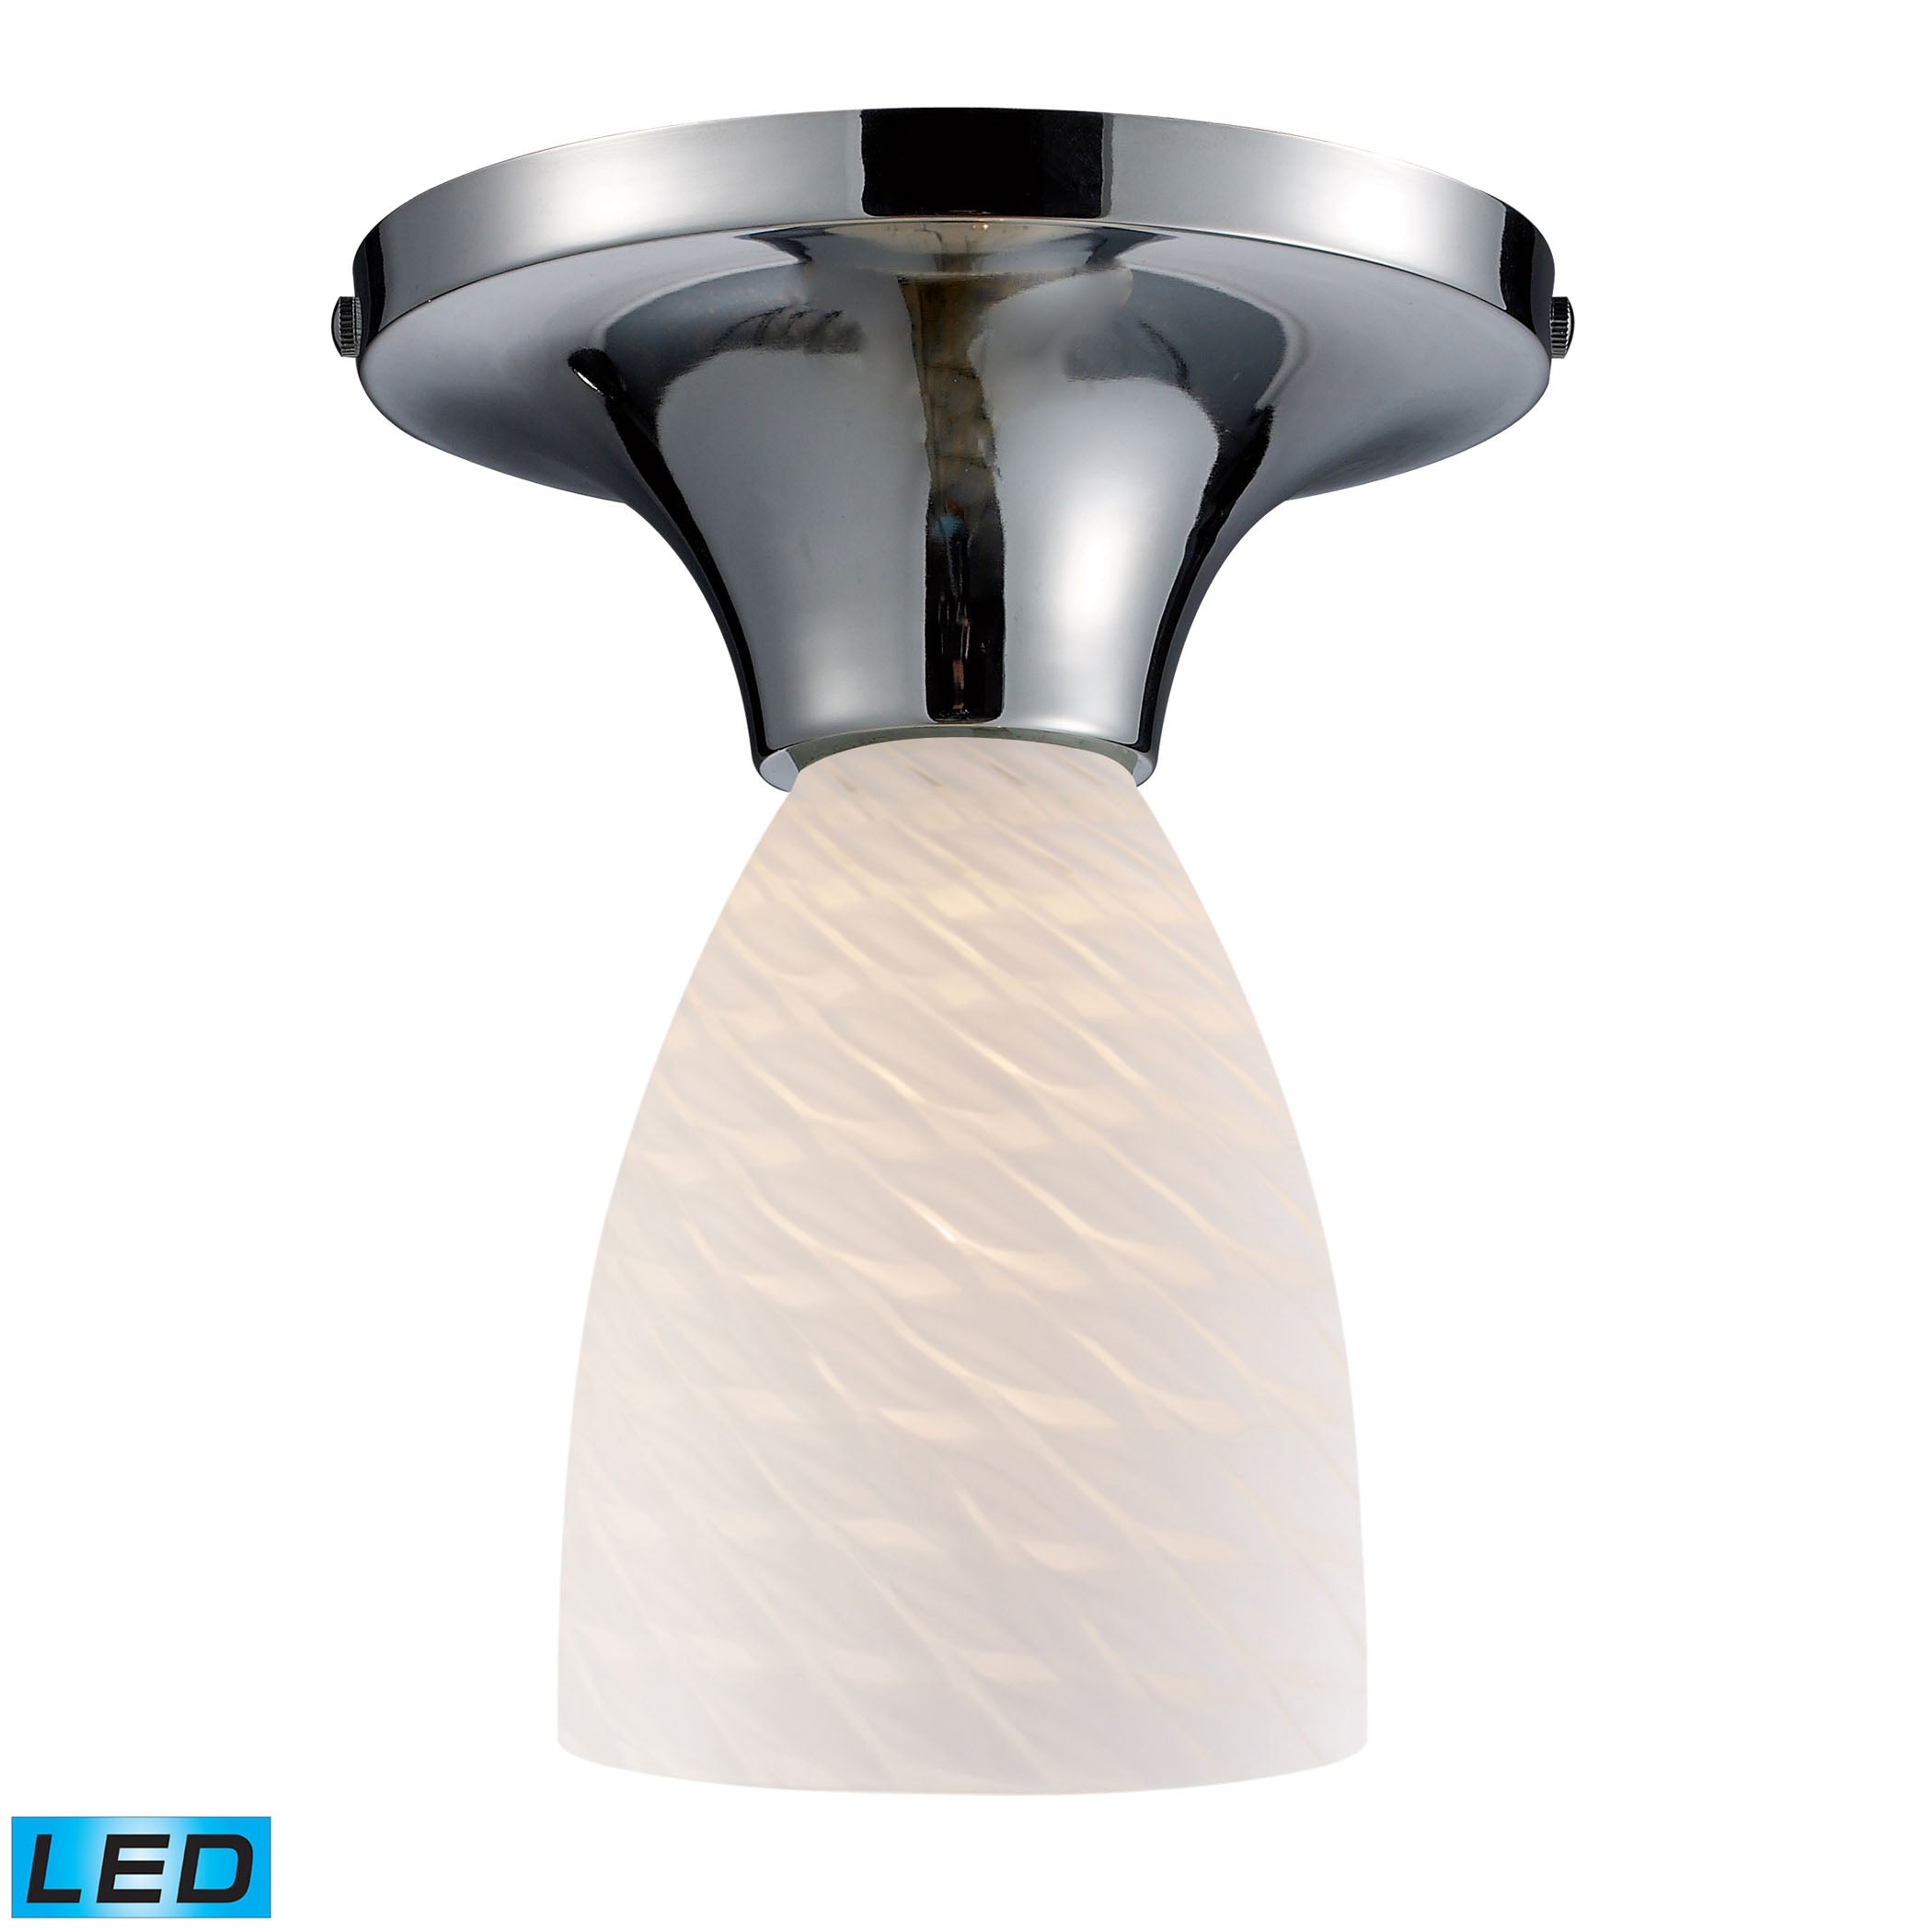 ELK Lighting 10152/1PC-WS-LED Celina 1-Light Semi Flush in Chrome with White Swirl Glass - Includes LED Bulb